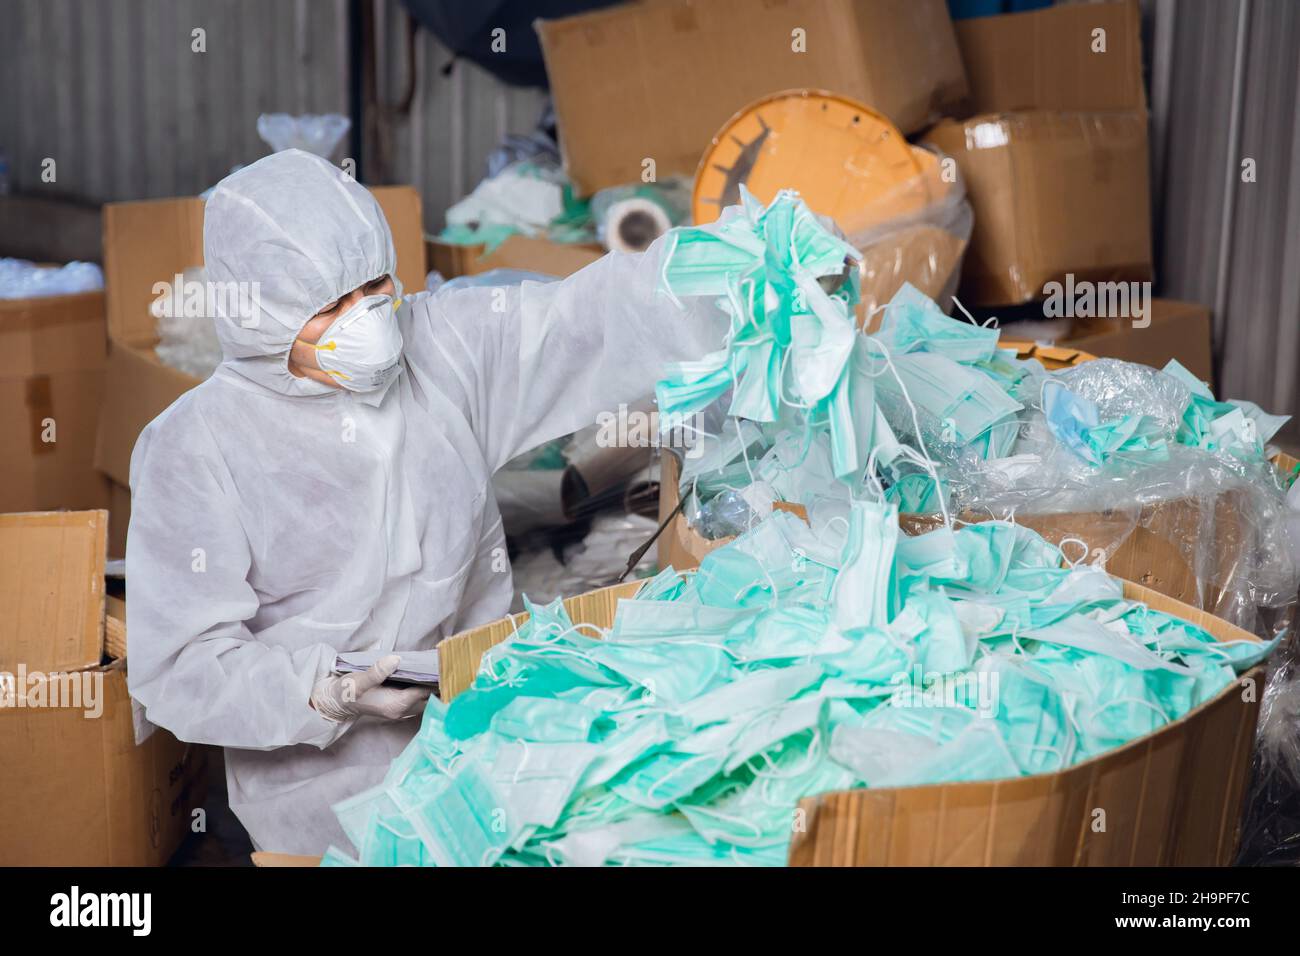 un sacco di maschera usata non ben gestito, rifiuti biologici pericolosi rifiuti medici contaminare rifiuti molto pericoloso Foto Stock